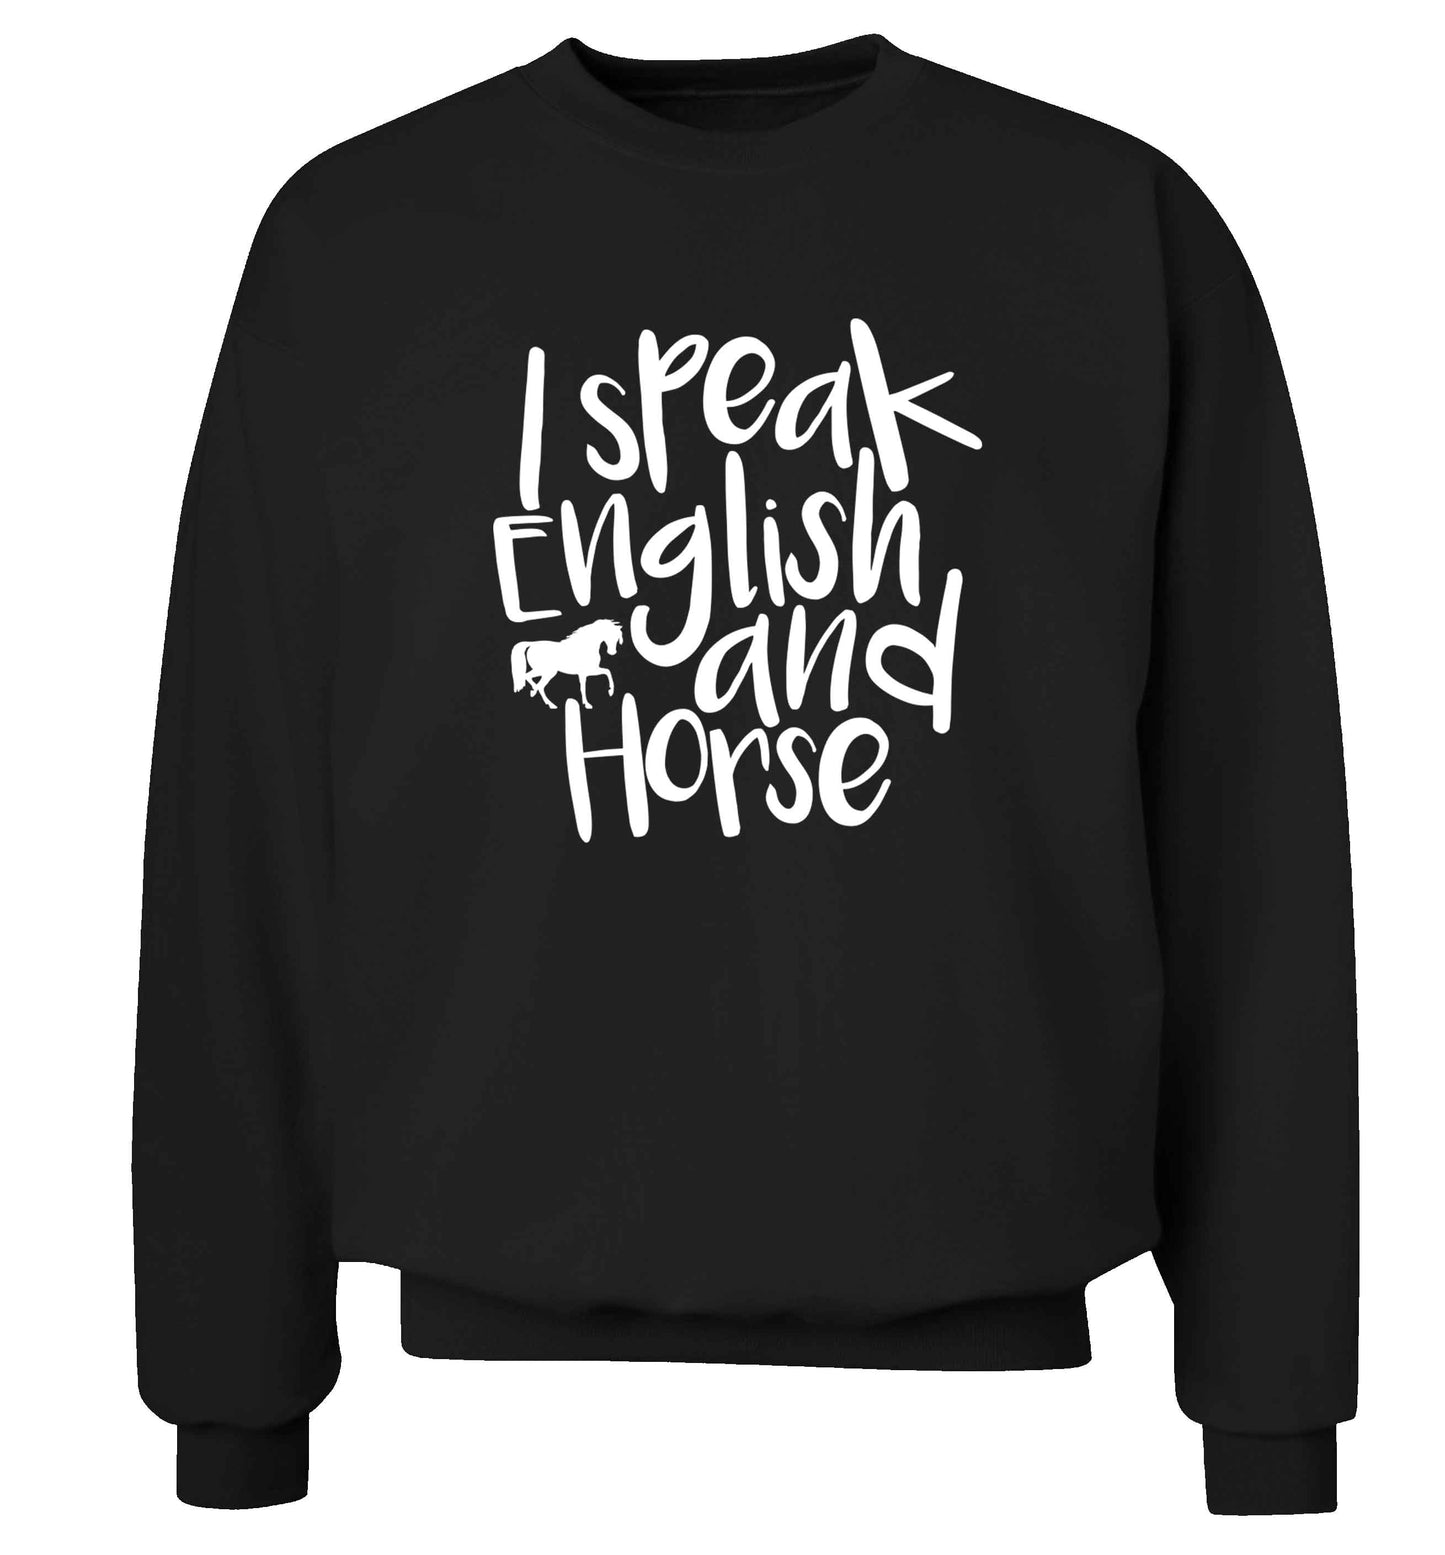 I speak English and horse adult's unisex black sweater 2XL